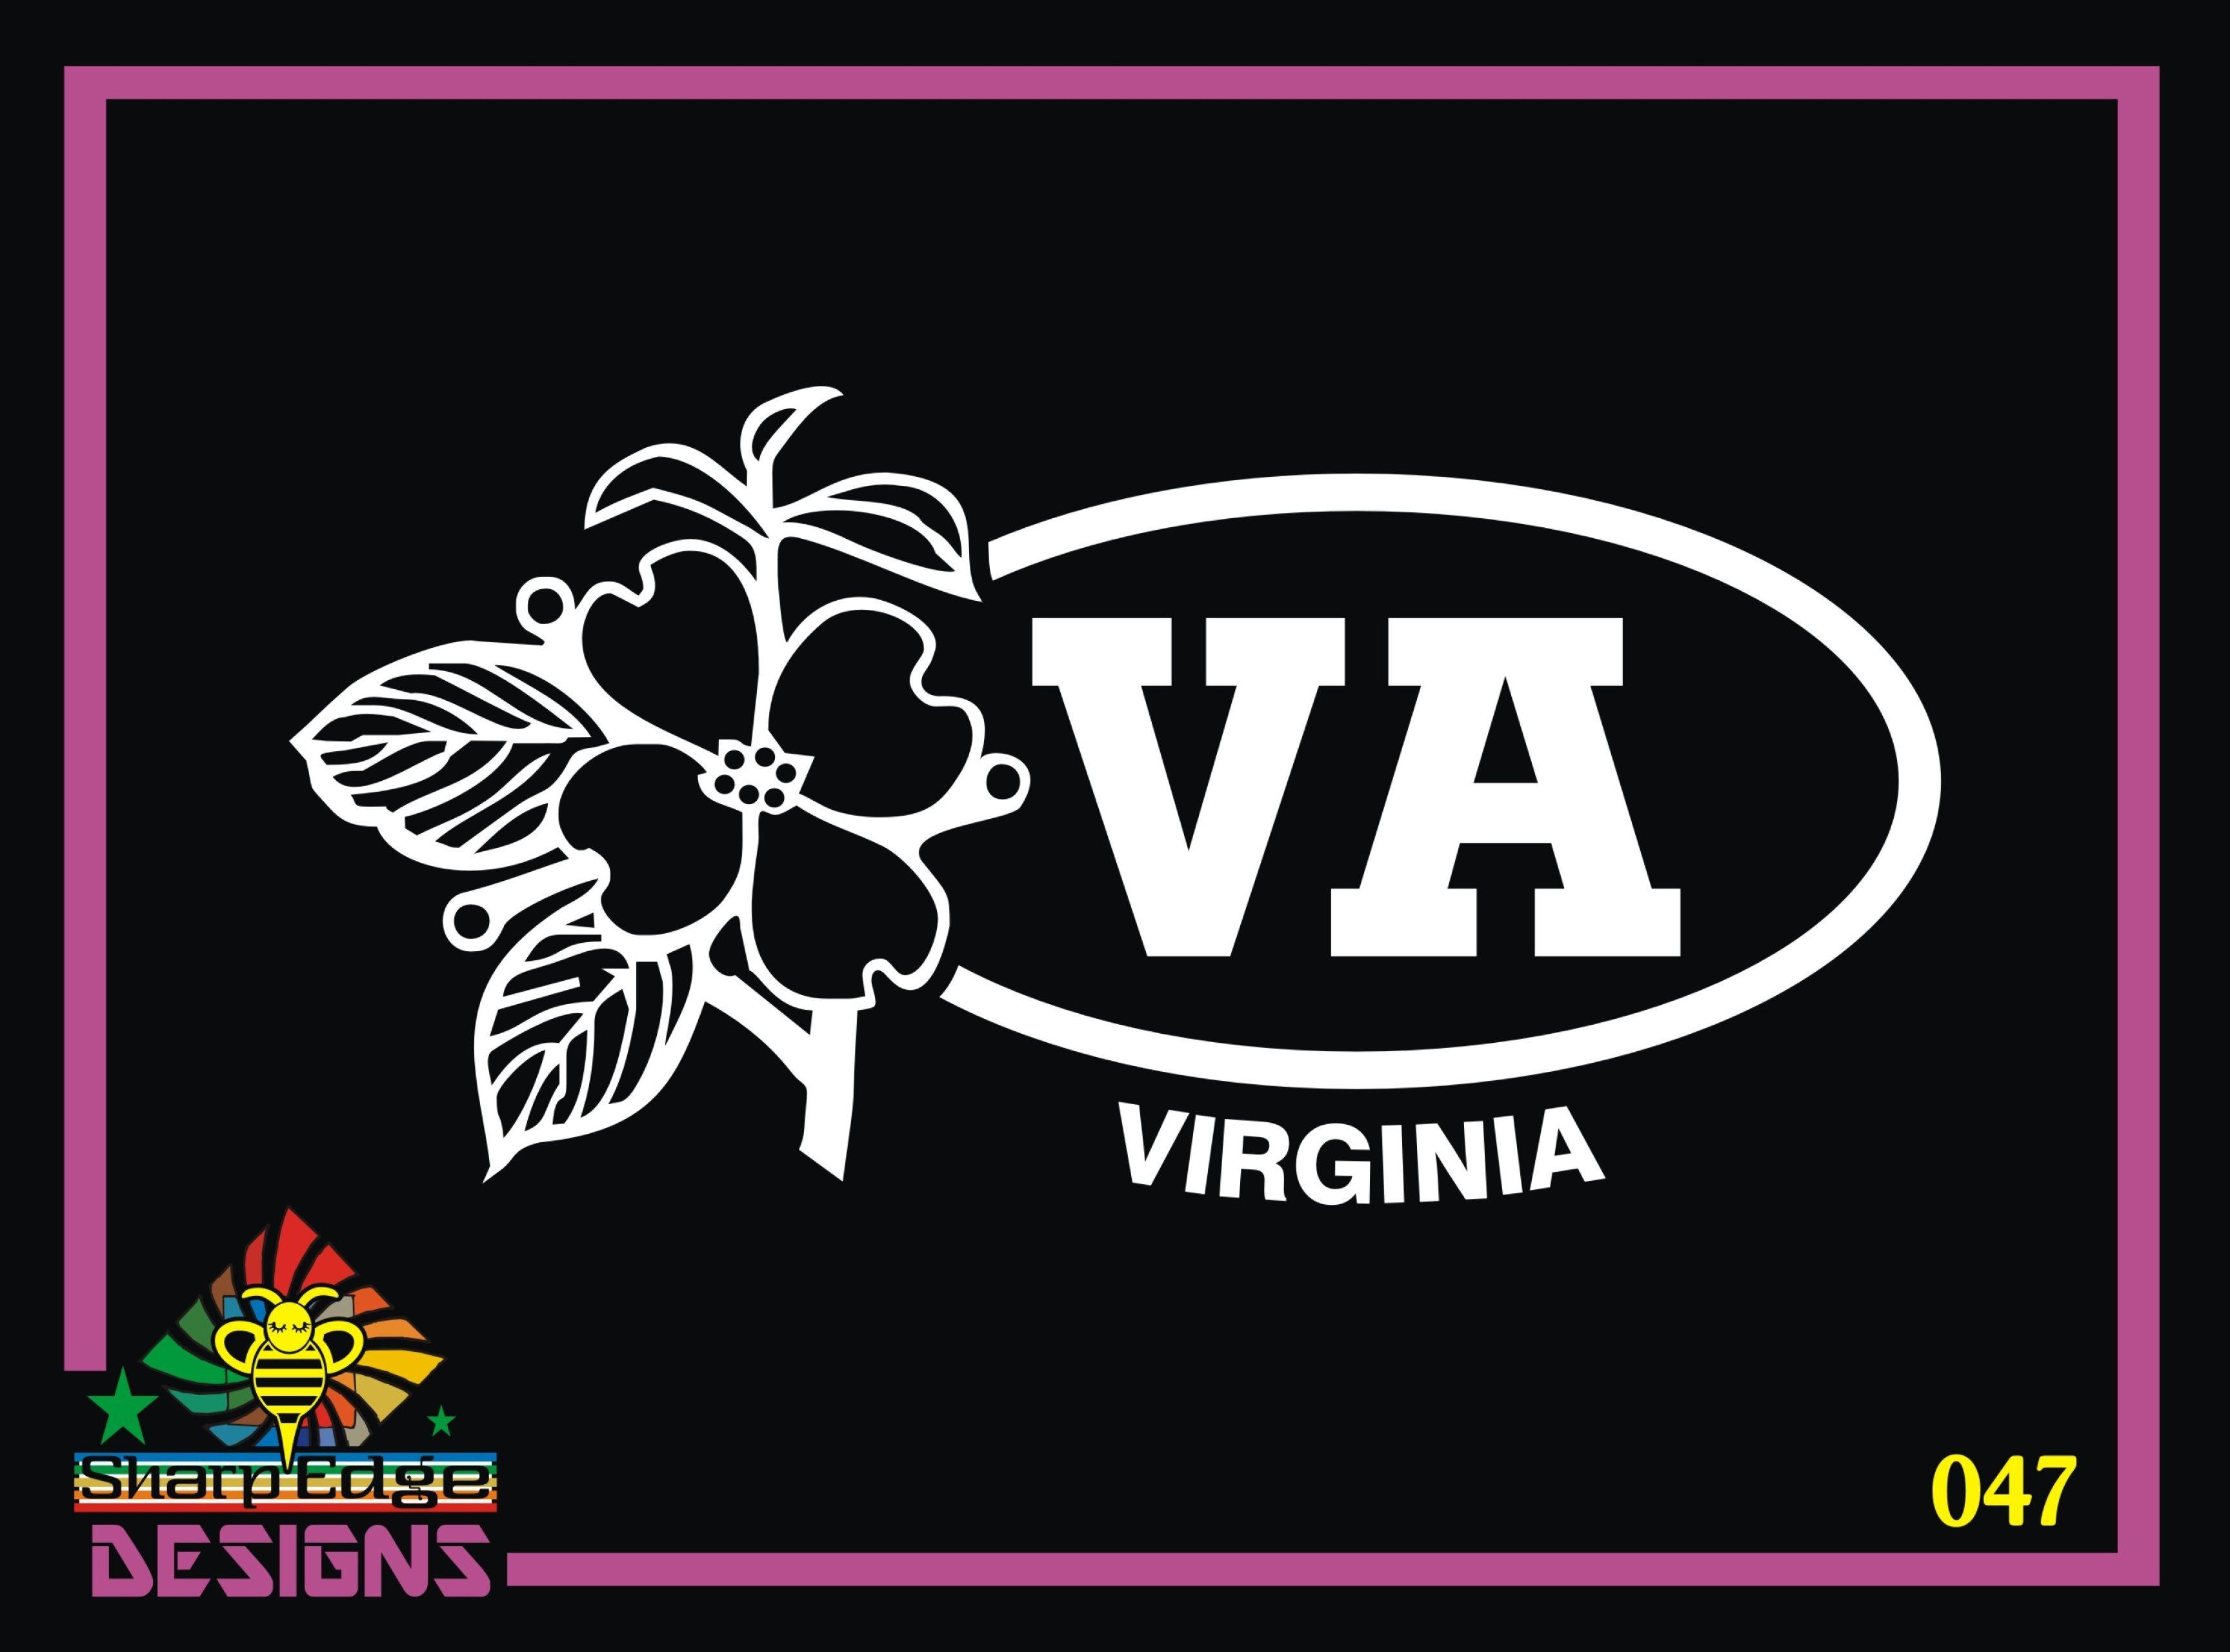 Sharp Edge Oval Logo - Virginia Oval w/ Dogwood Flower Vinyl Decal